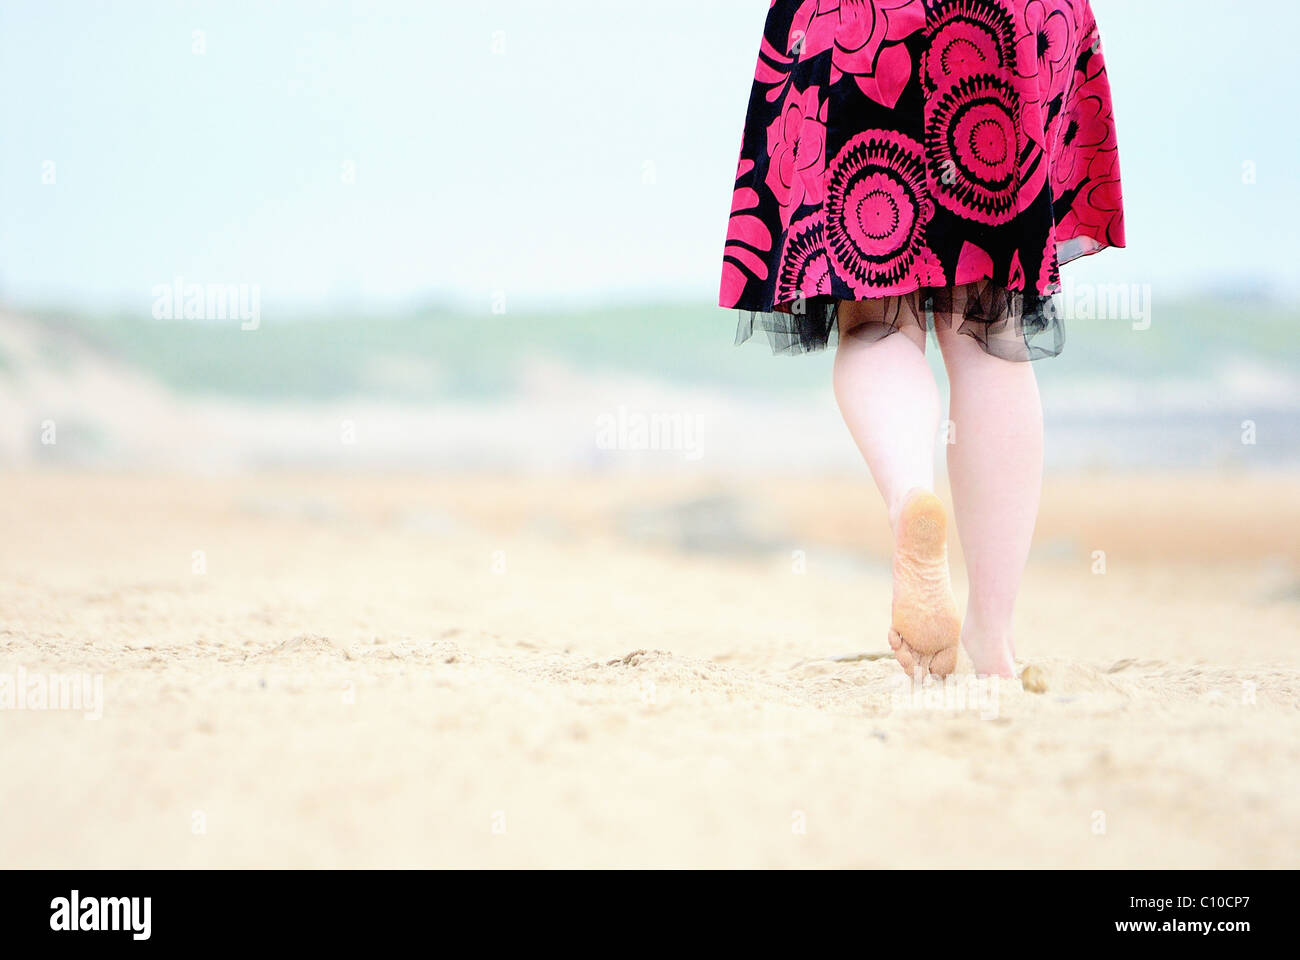 Un par de pies caminando por la playa en un vestido rosado y negro, caminando sobre la arena puedes ver la suela de un pie. Foto de stock